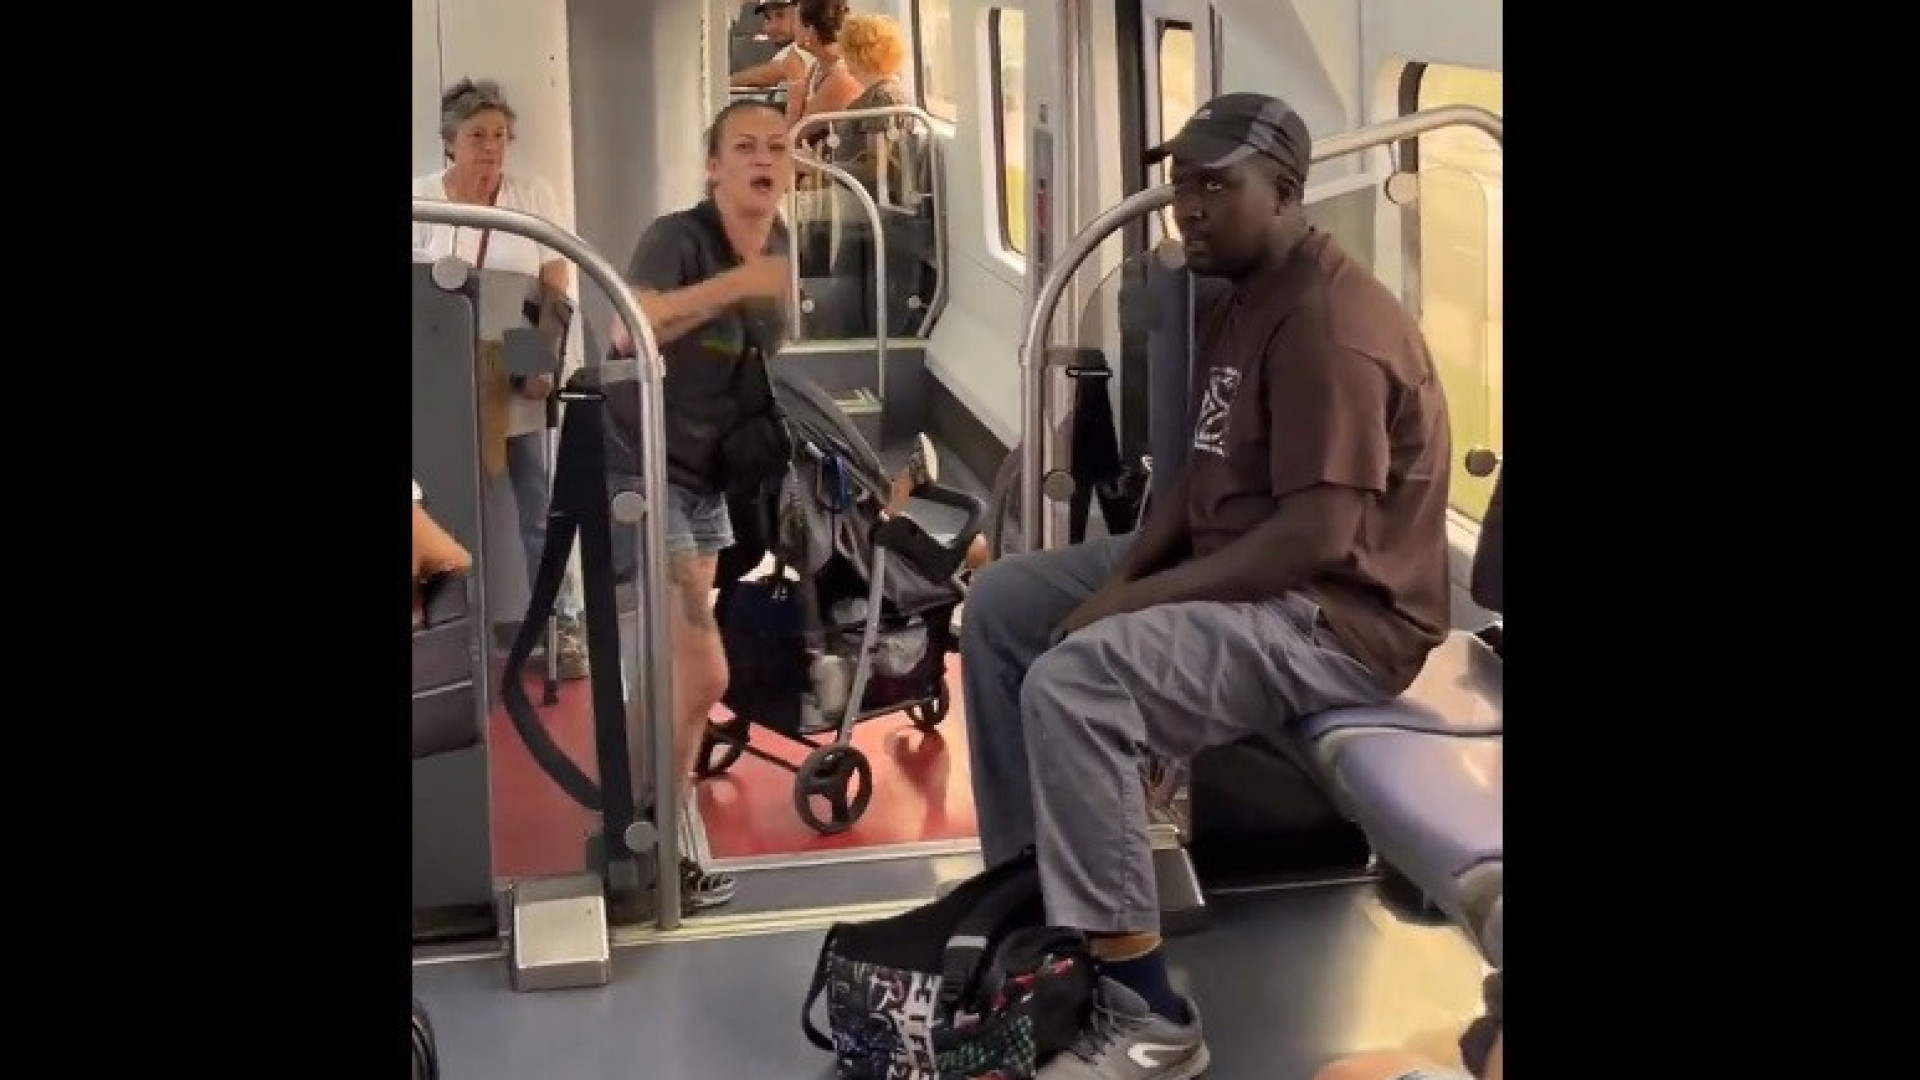 Insulto racista leva passageiros do metro a sair em defesa de homem